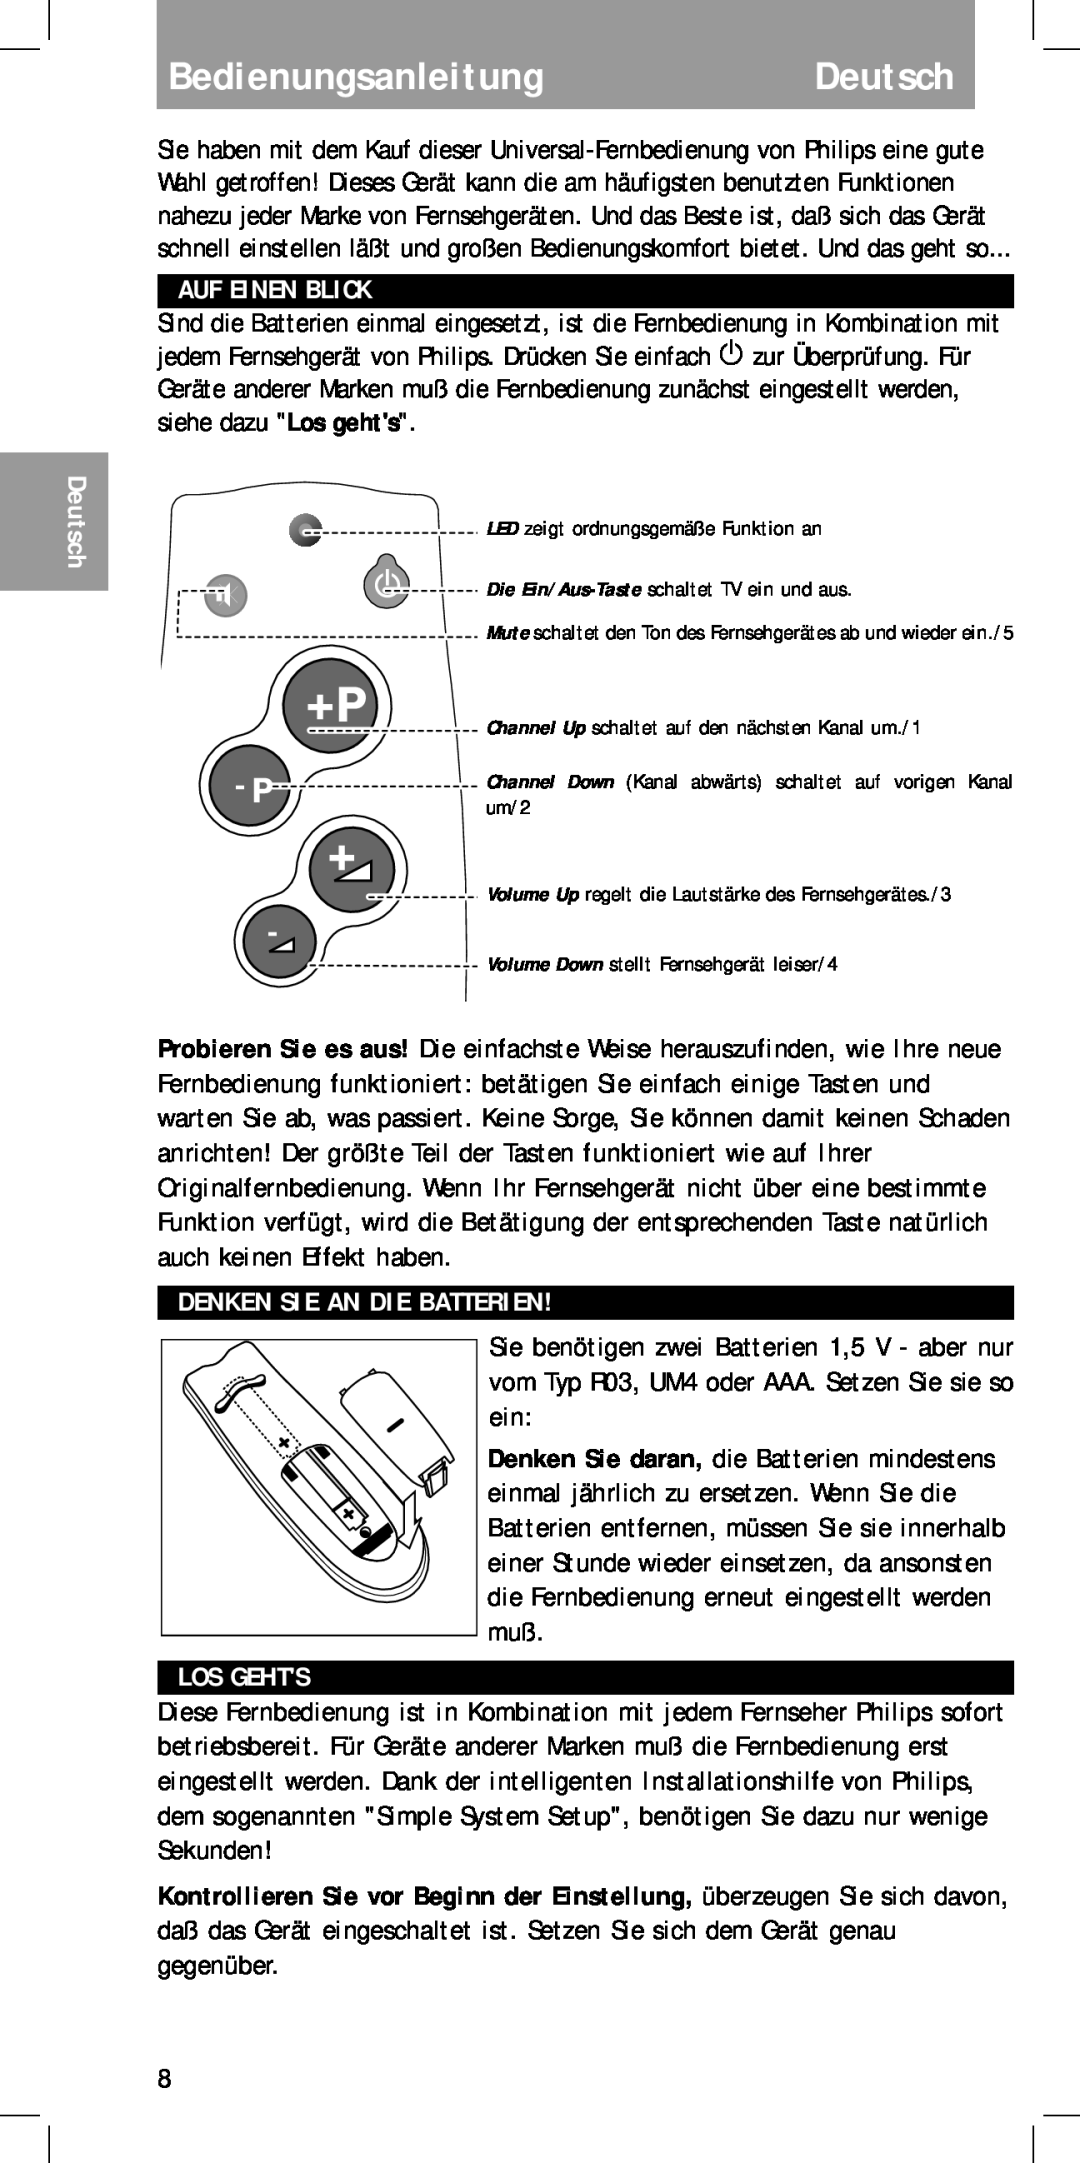 Philips MC-110 manual BedienungsanleitungDeutsch, Auf Einen Blick, Denken Sie An Die Batterien, Los Gehts 